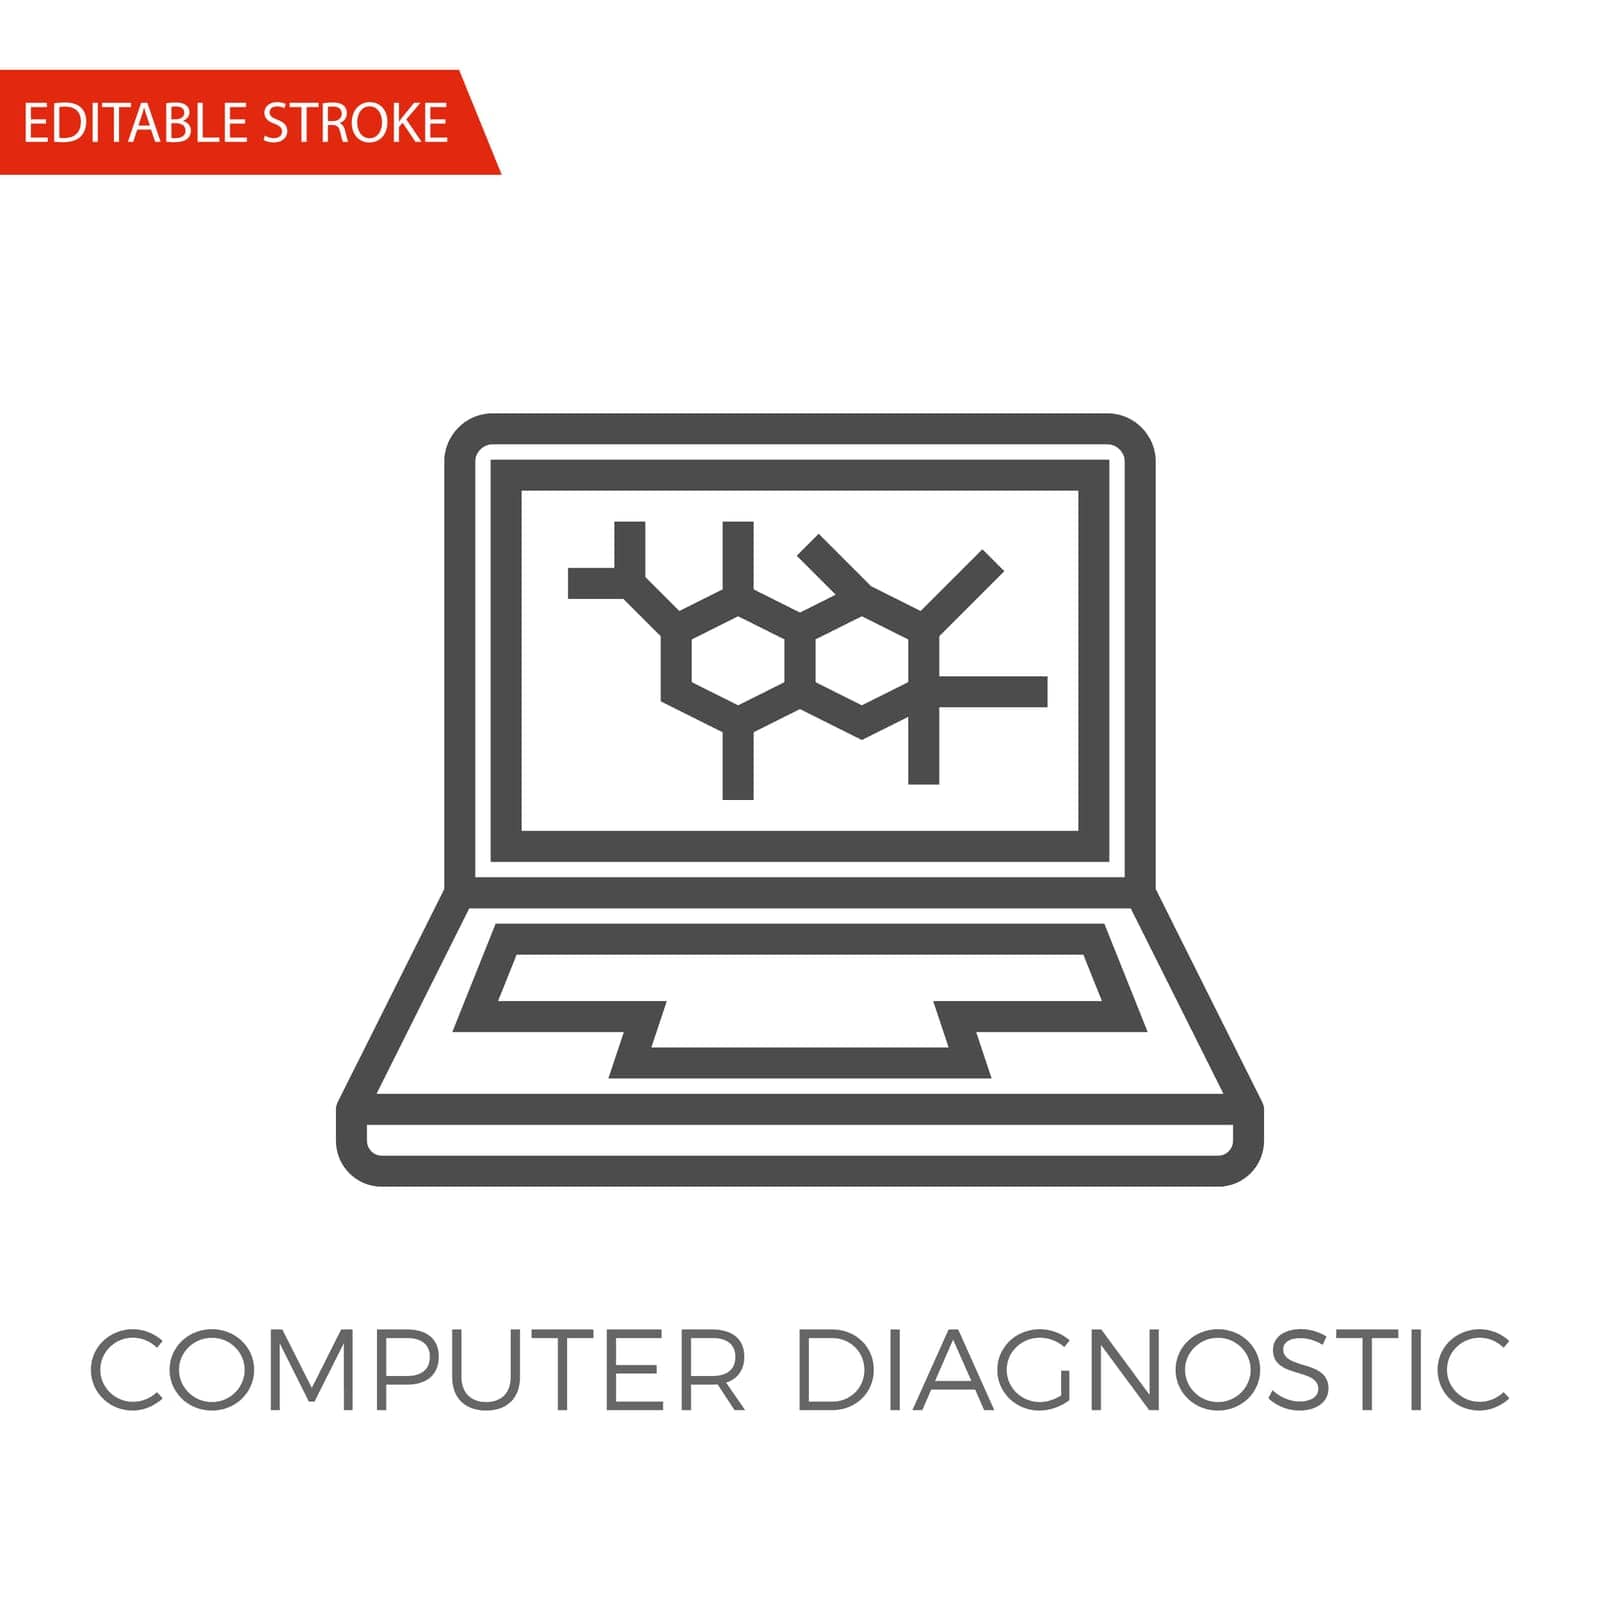 Computer Diagnostic Vector Icon by smoki